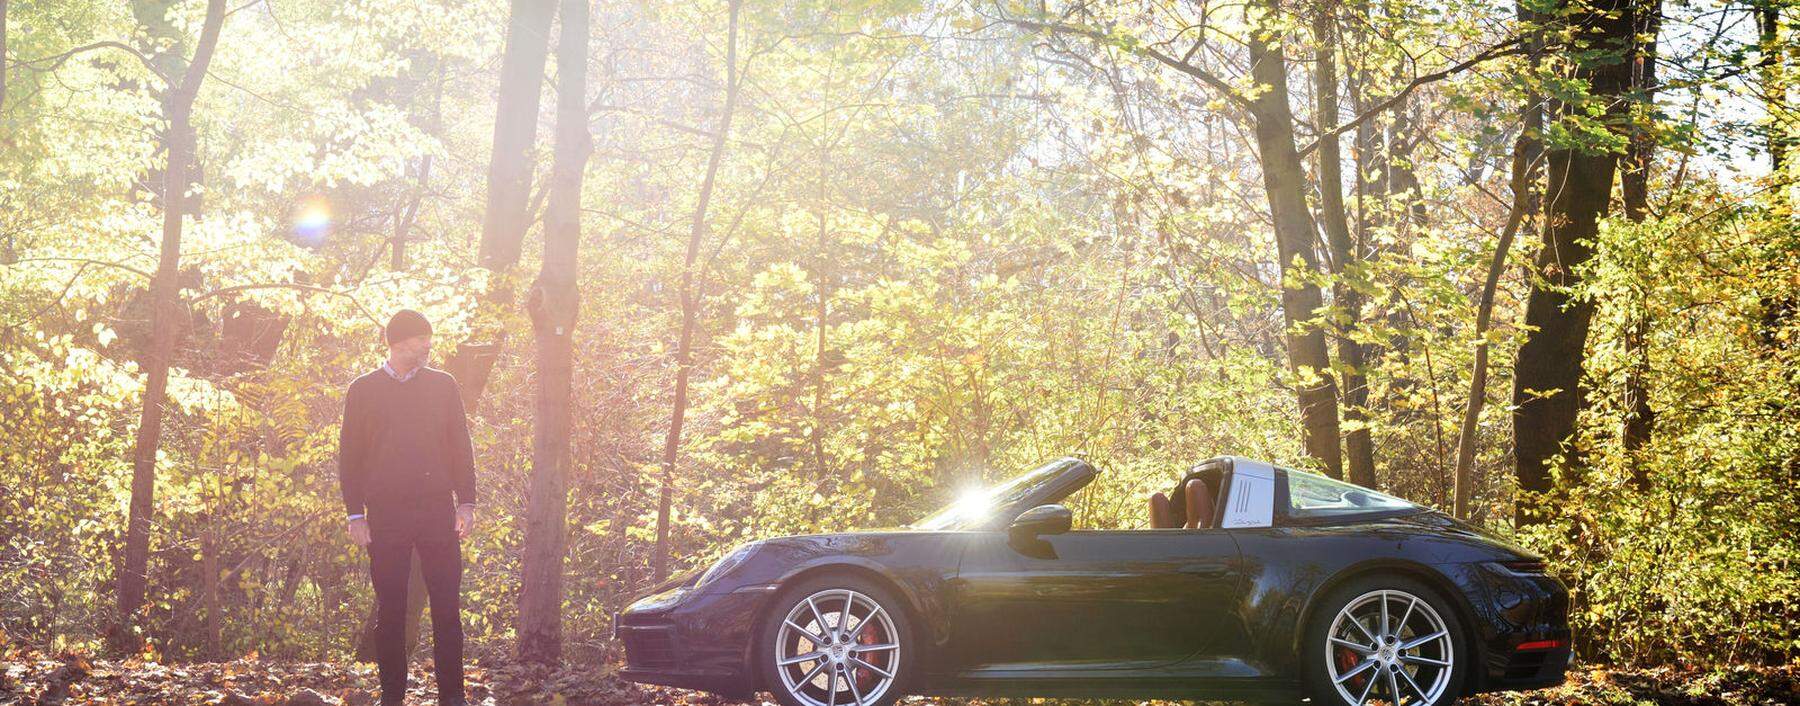 Haube auf, Jacke an: Den Porsche 911 Targa muss man auch im Spätherbst mit offenem Dach fahren.